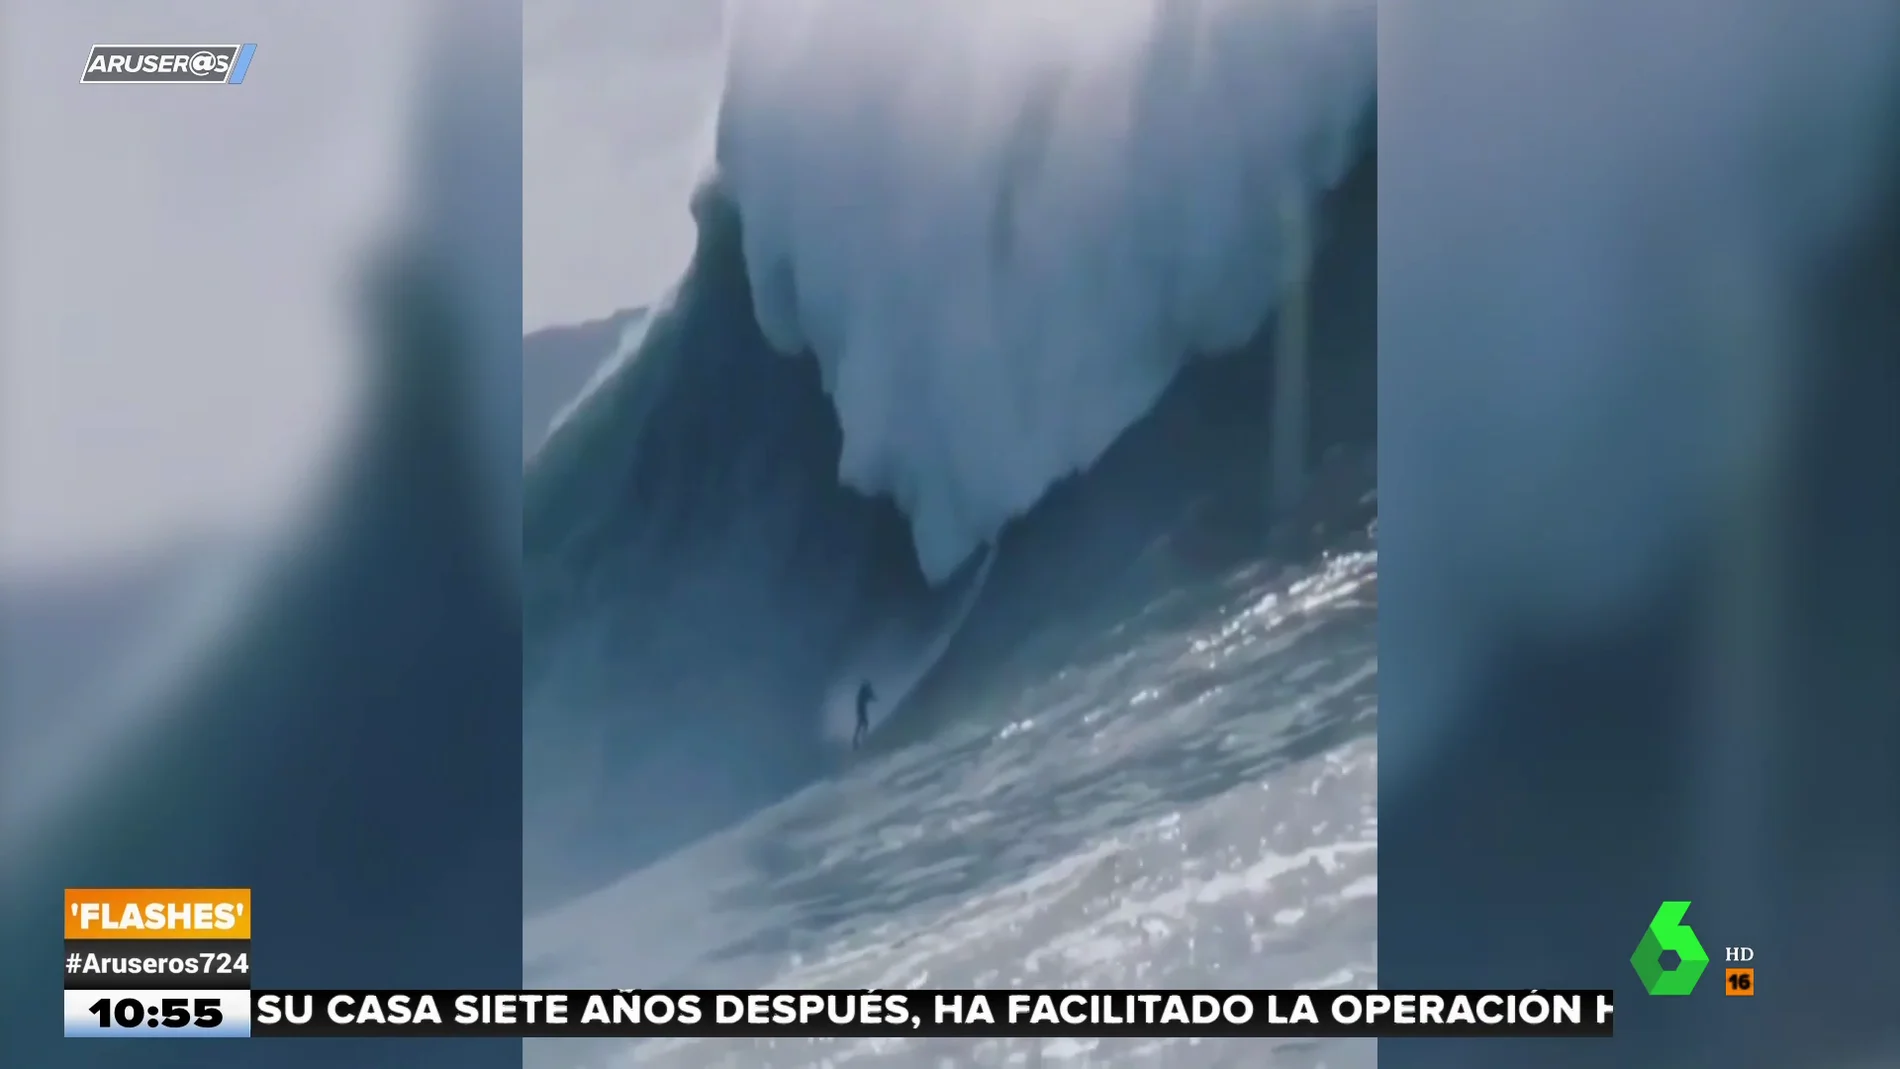 Surfista viral ola gigante